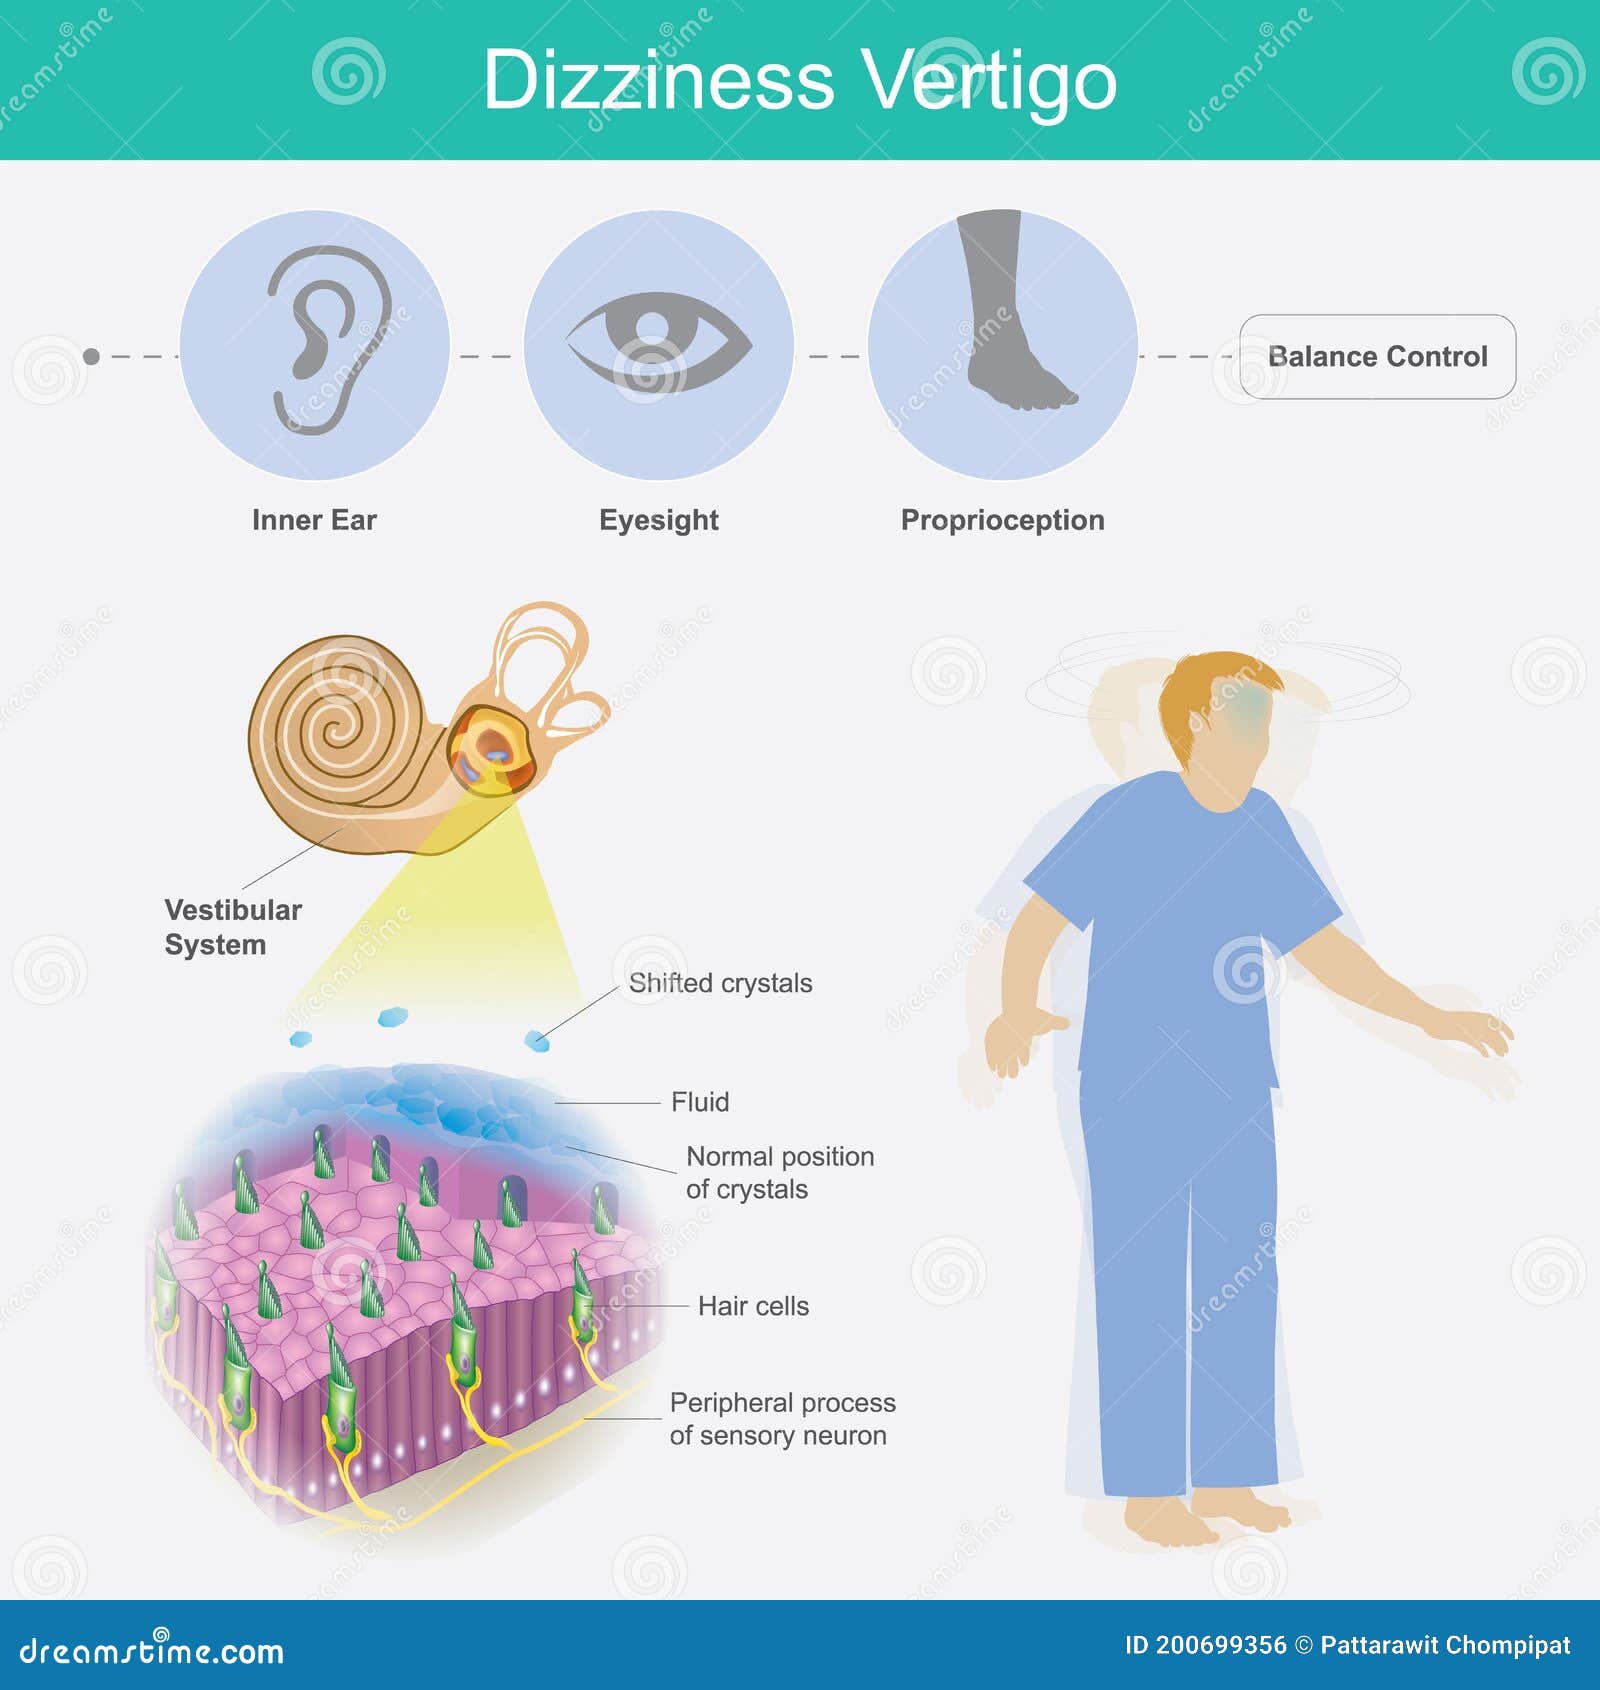 dizziness vertigo.  explain dizziness